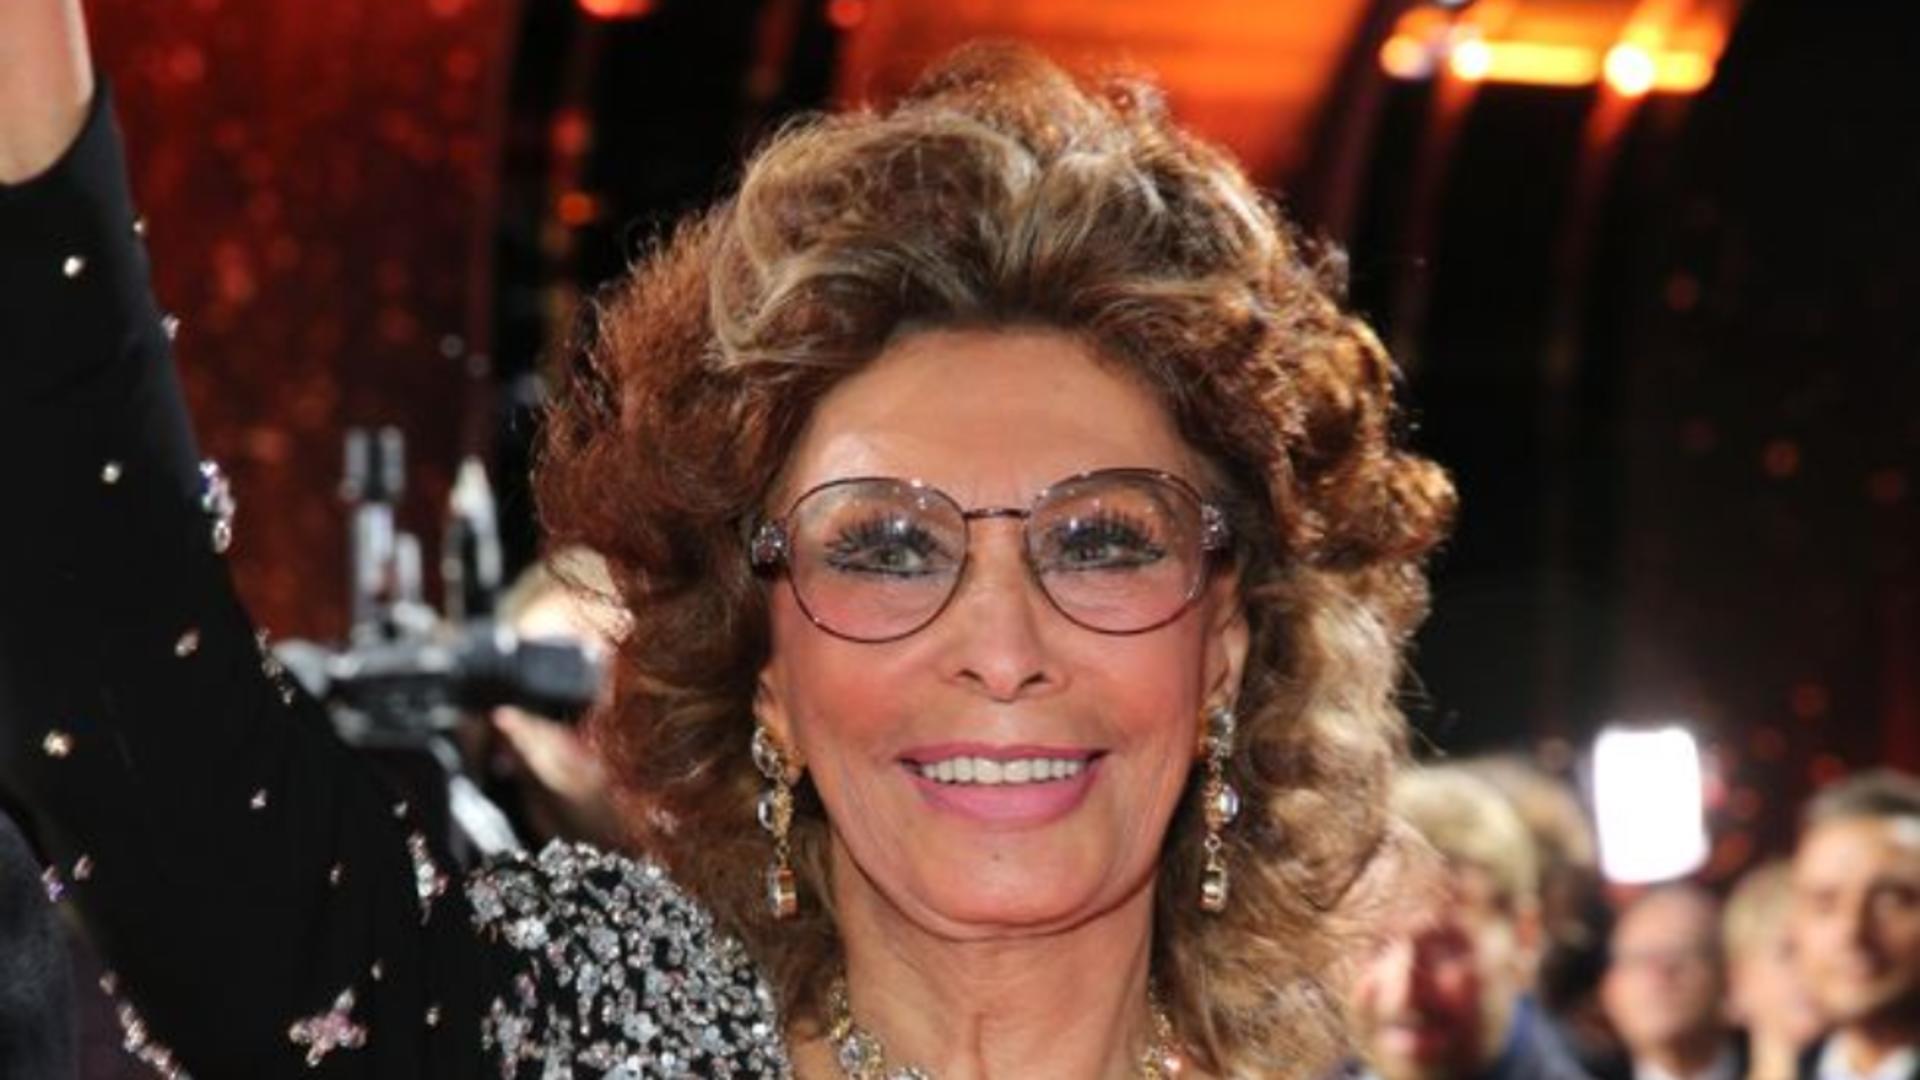 Rețeta unică de tiramisu, preparată de marea actriță Sophia Loren - Savoarea este incredibilă